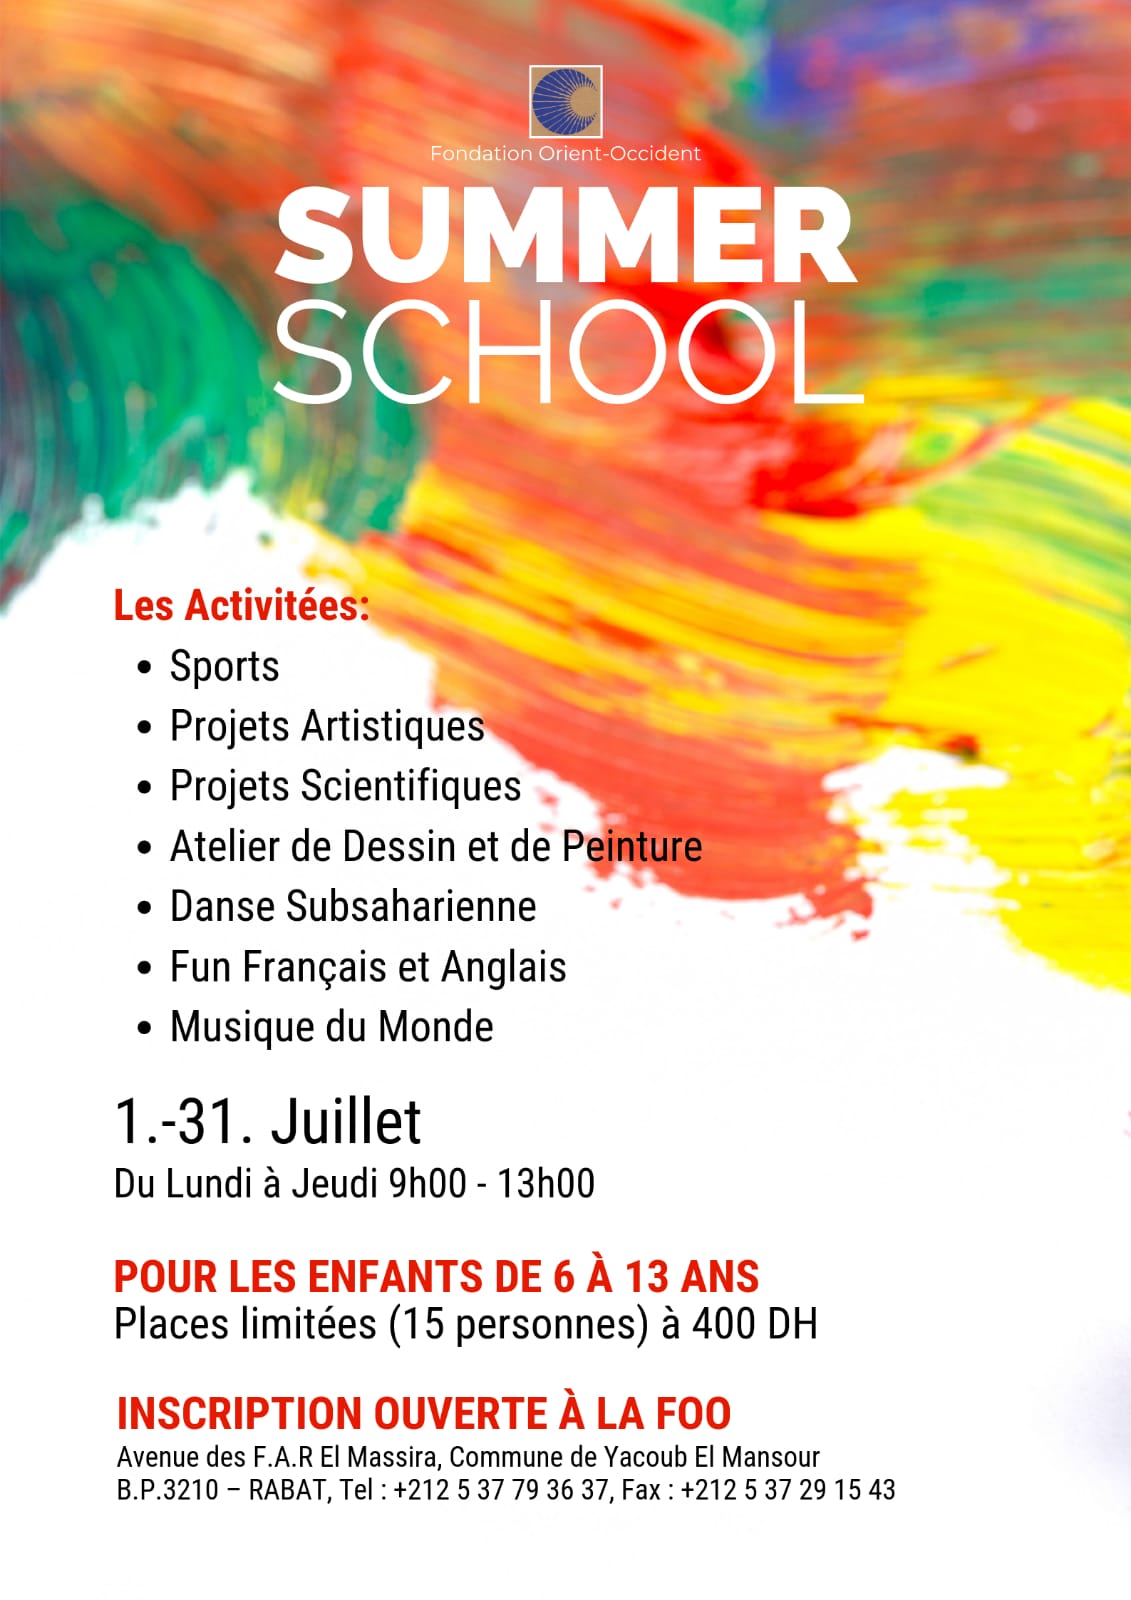 Maintenant à la Fondation Orient-Occident de Rabat: summer school pour les enfants!